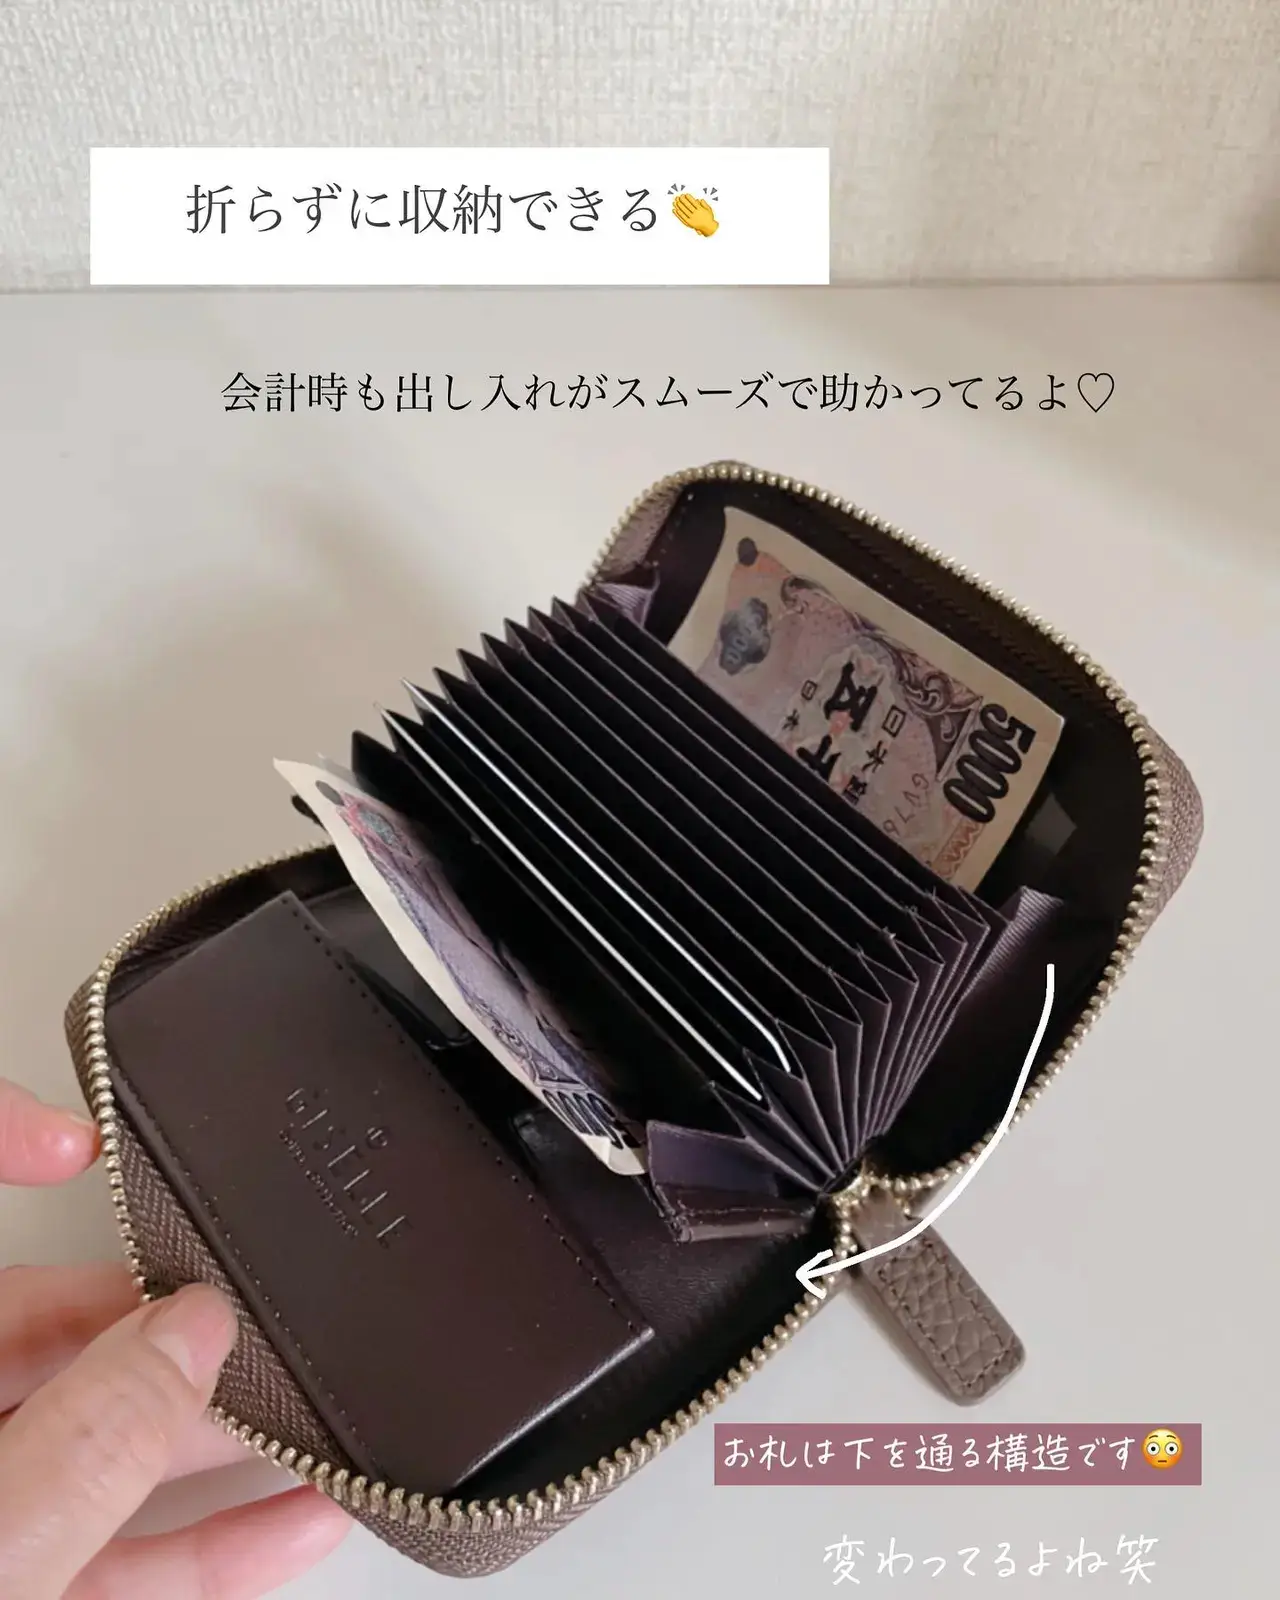 こんな便利なお財布が欲しかった😳 | MIA_95が投稿したフォトブック 